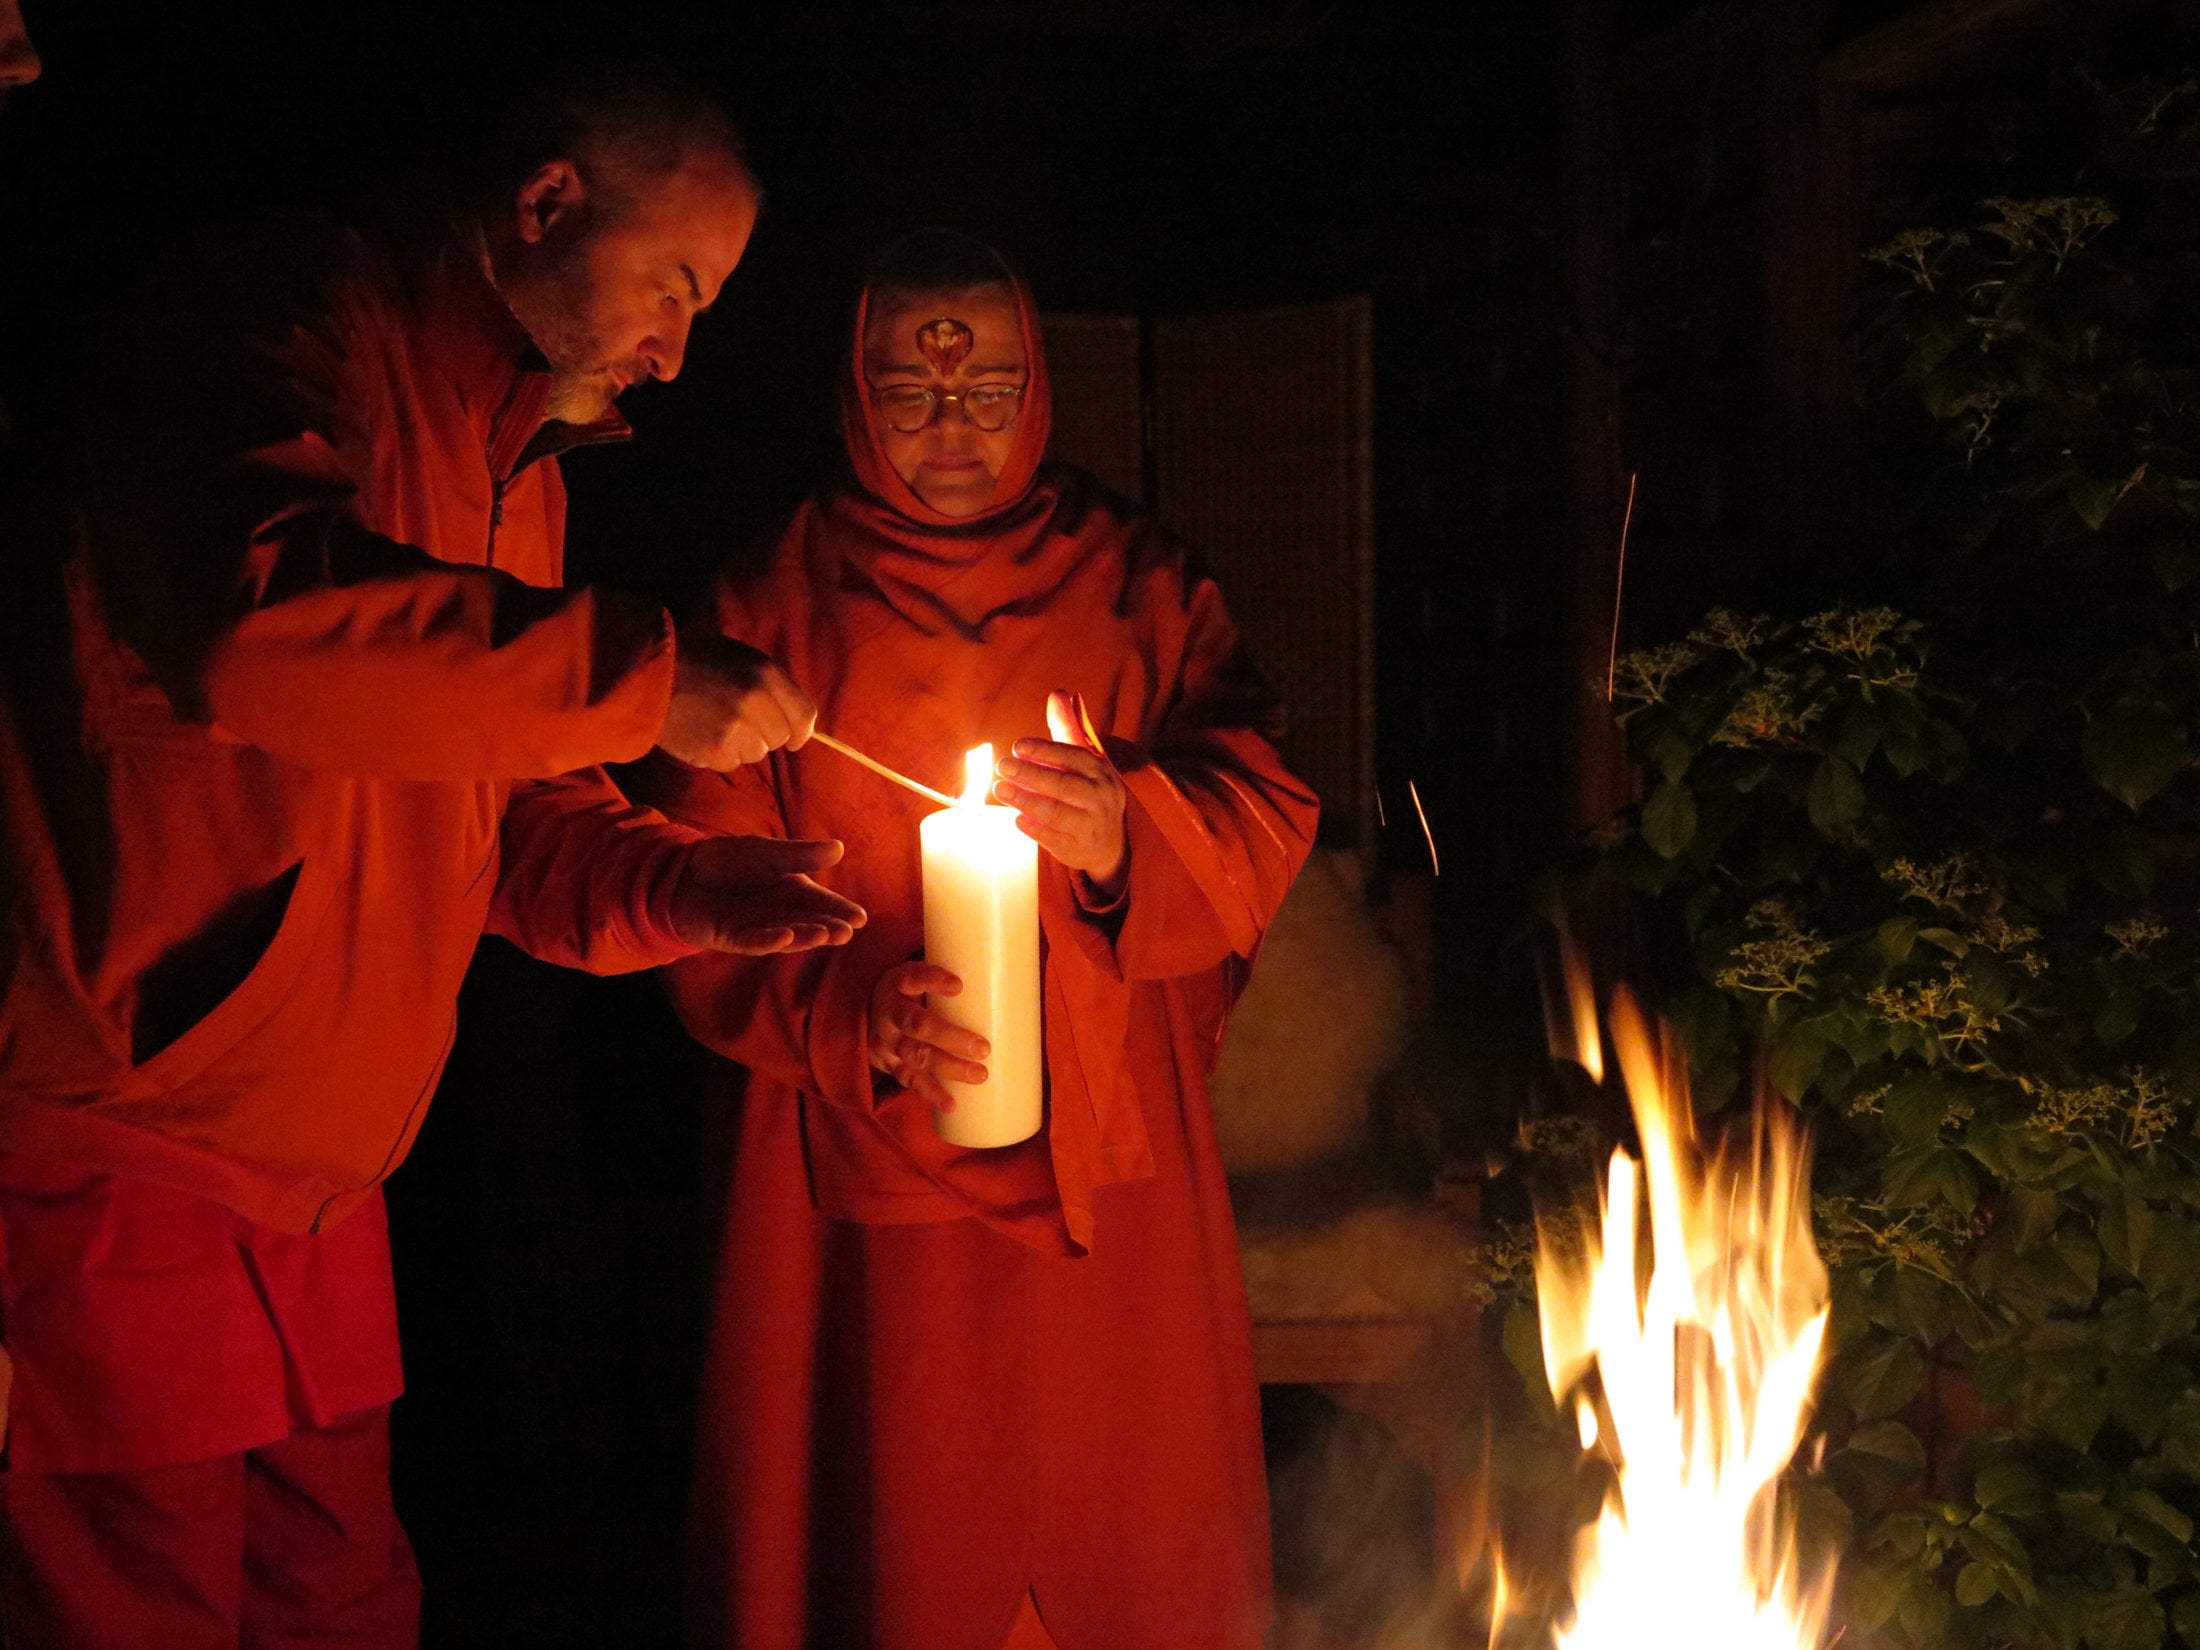 Laxman entzündet die Kerze in Ma's Hand. Anschließend trägt Ma das erste Licht ins dunkle Darshanzimmer.